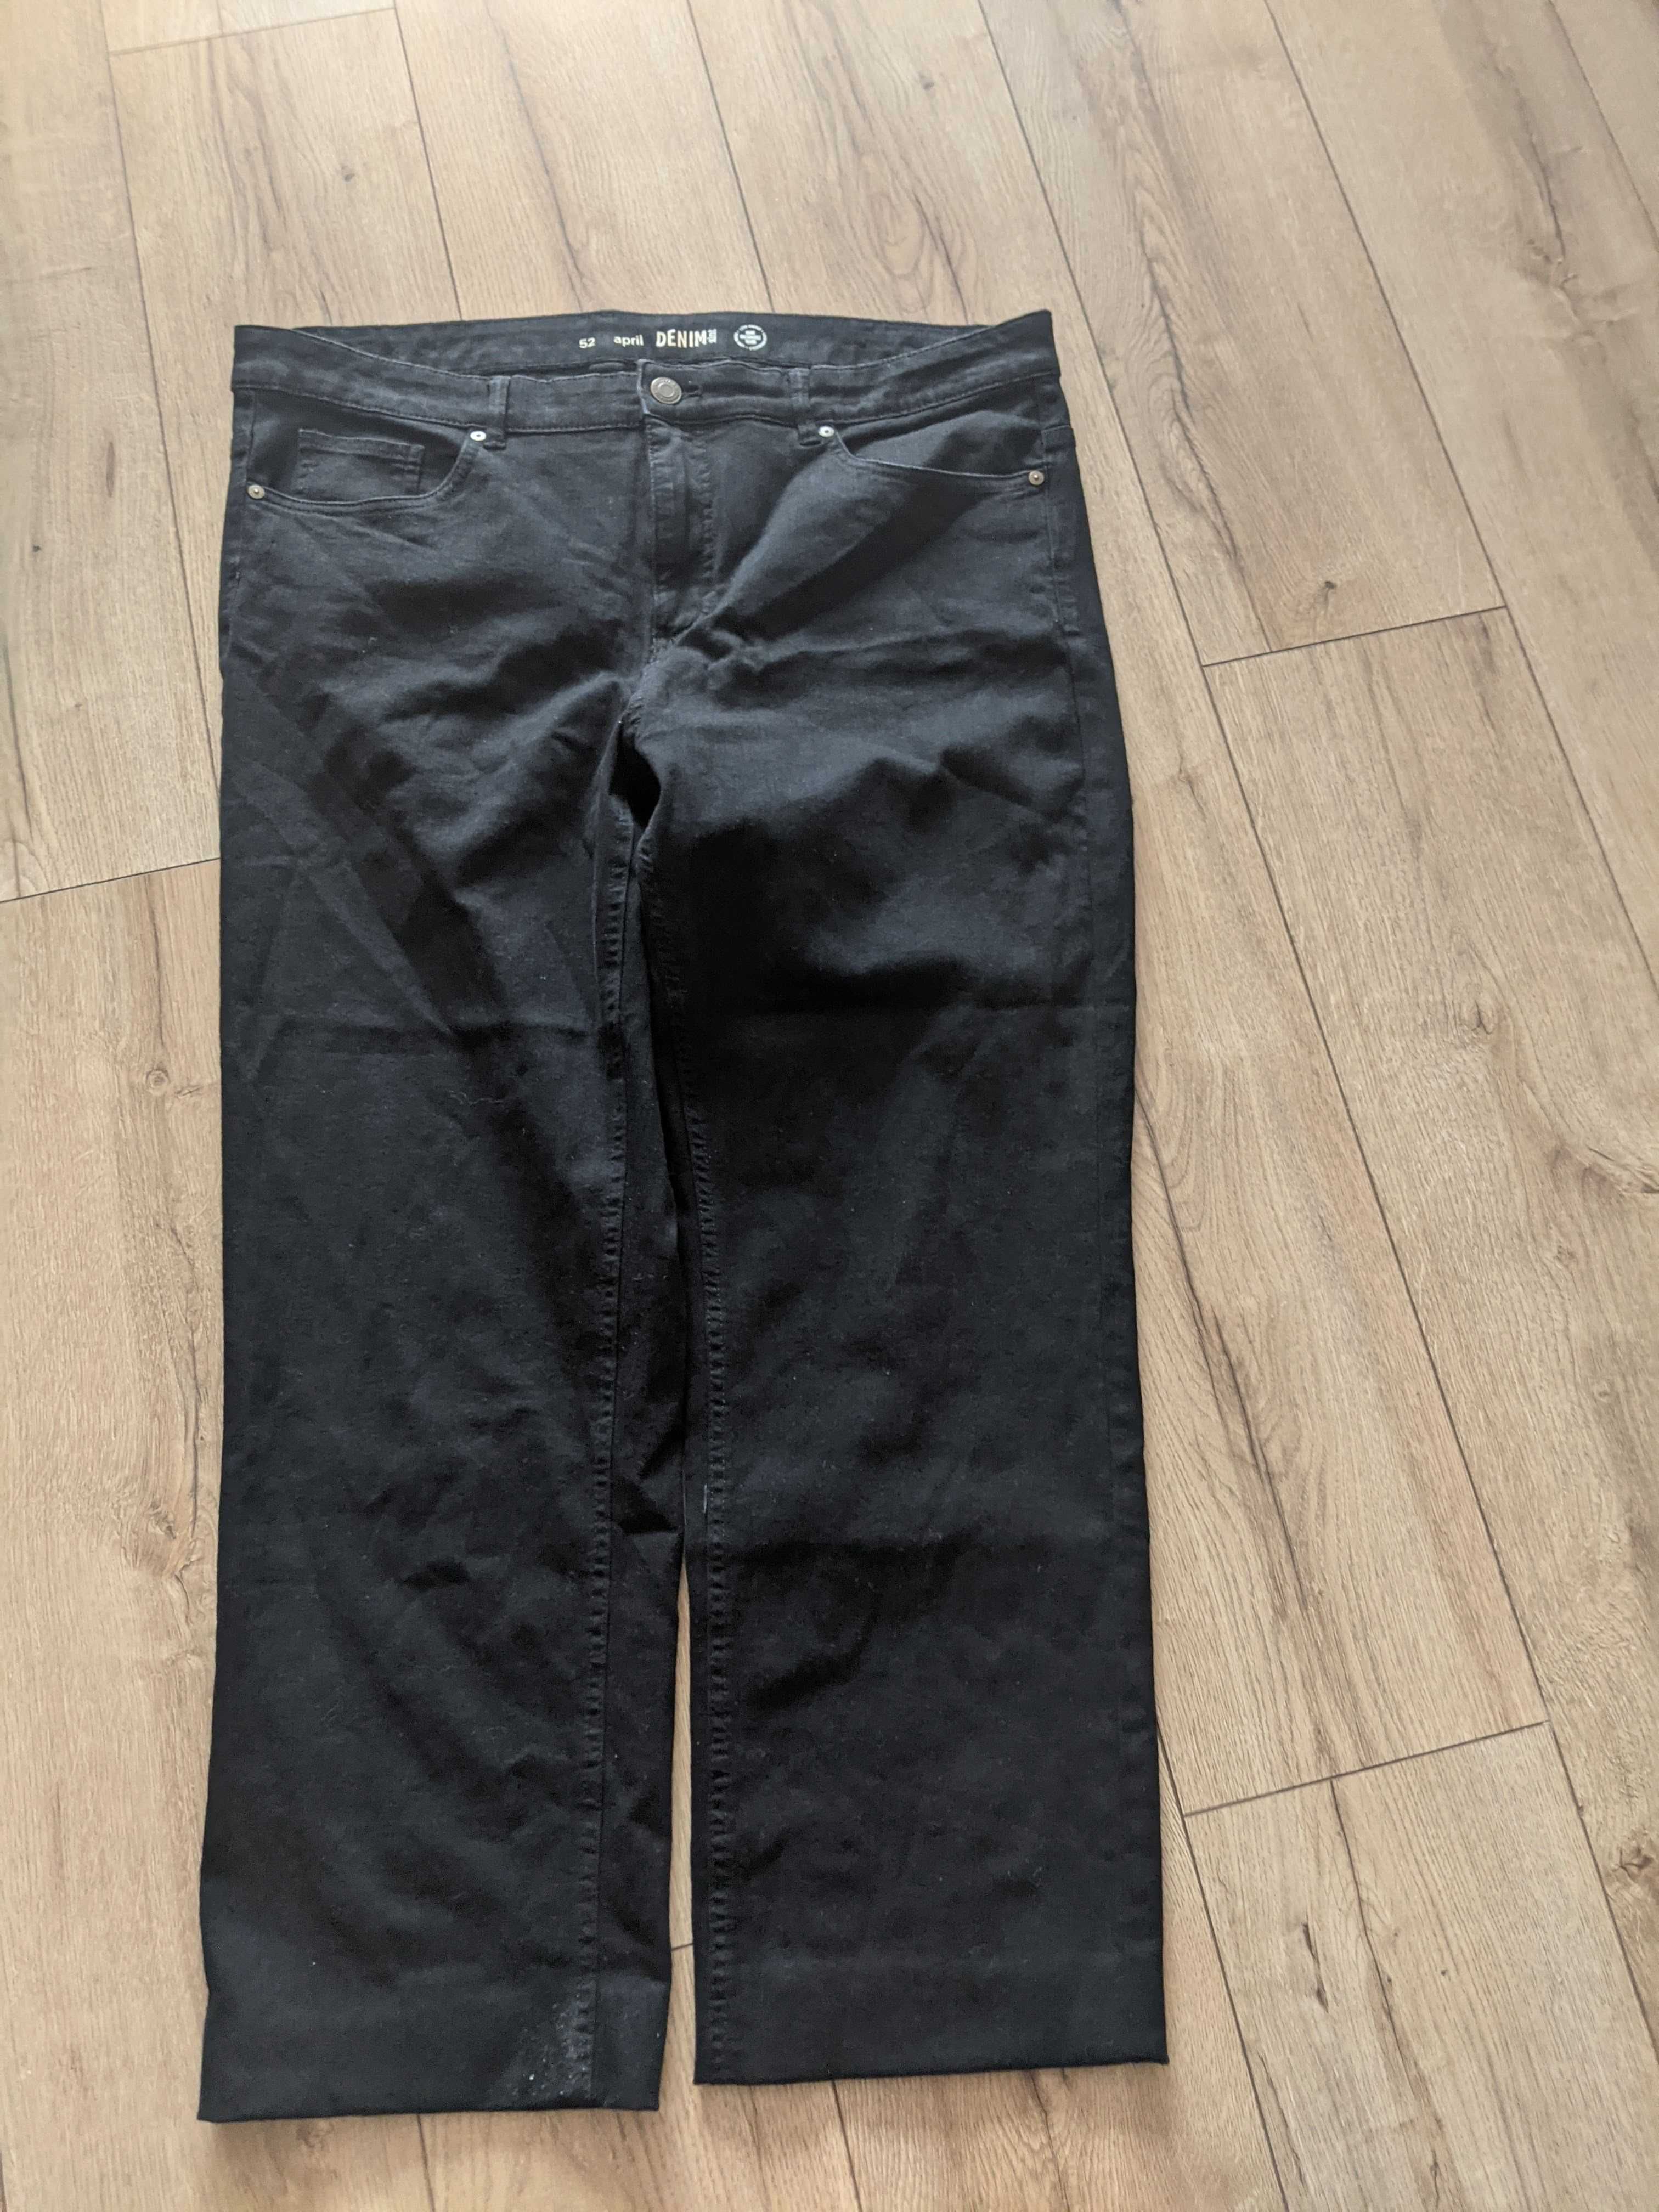 Spodnie męskie 42 miękki elastyczny jeans 3XL jNowe pas106